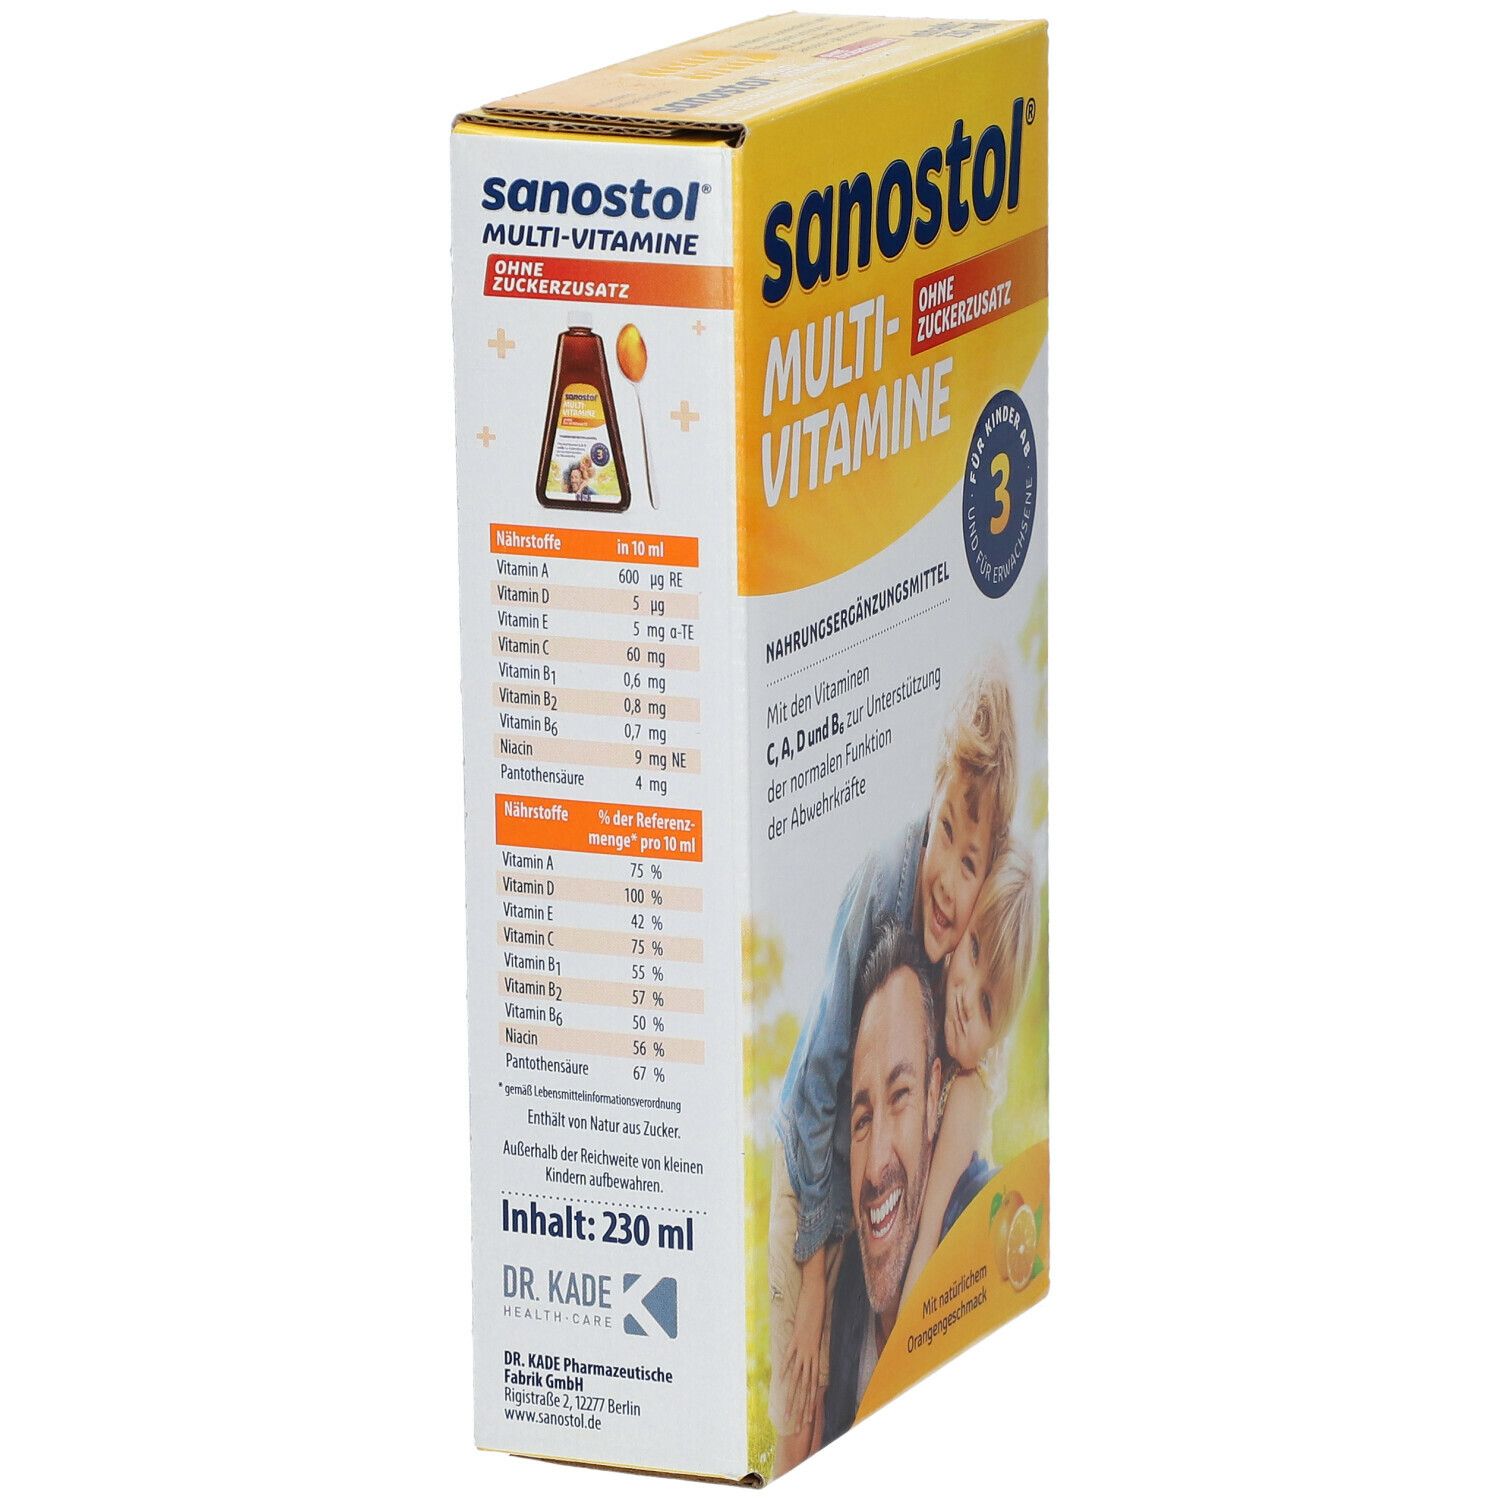 Sanostol® Multi-Vitamine ohne Zuckerzusatz